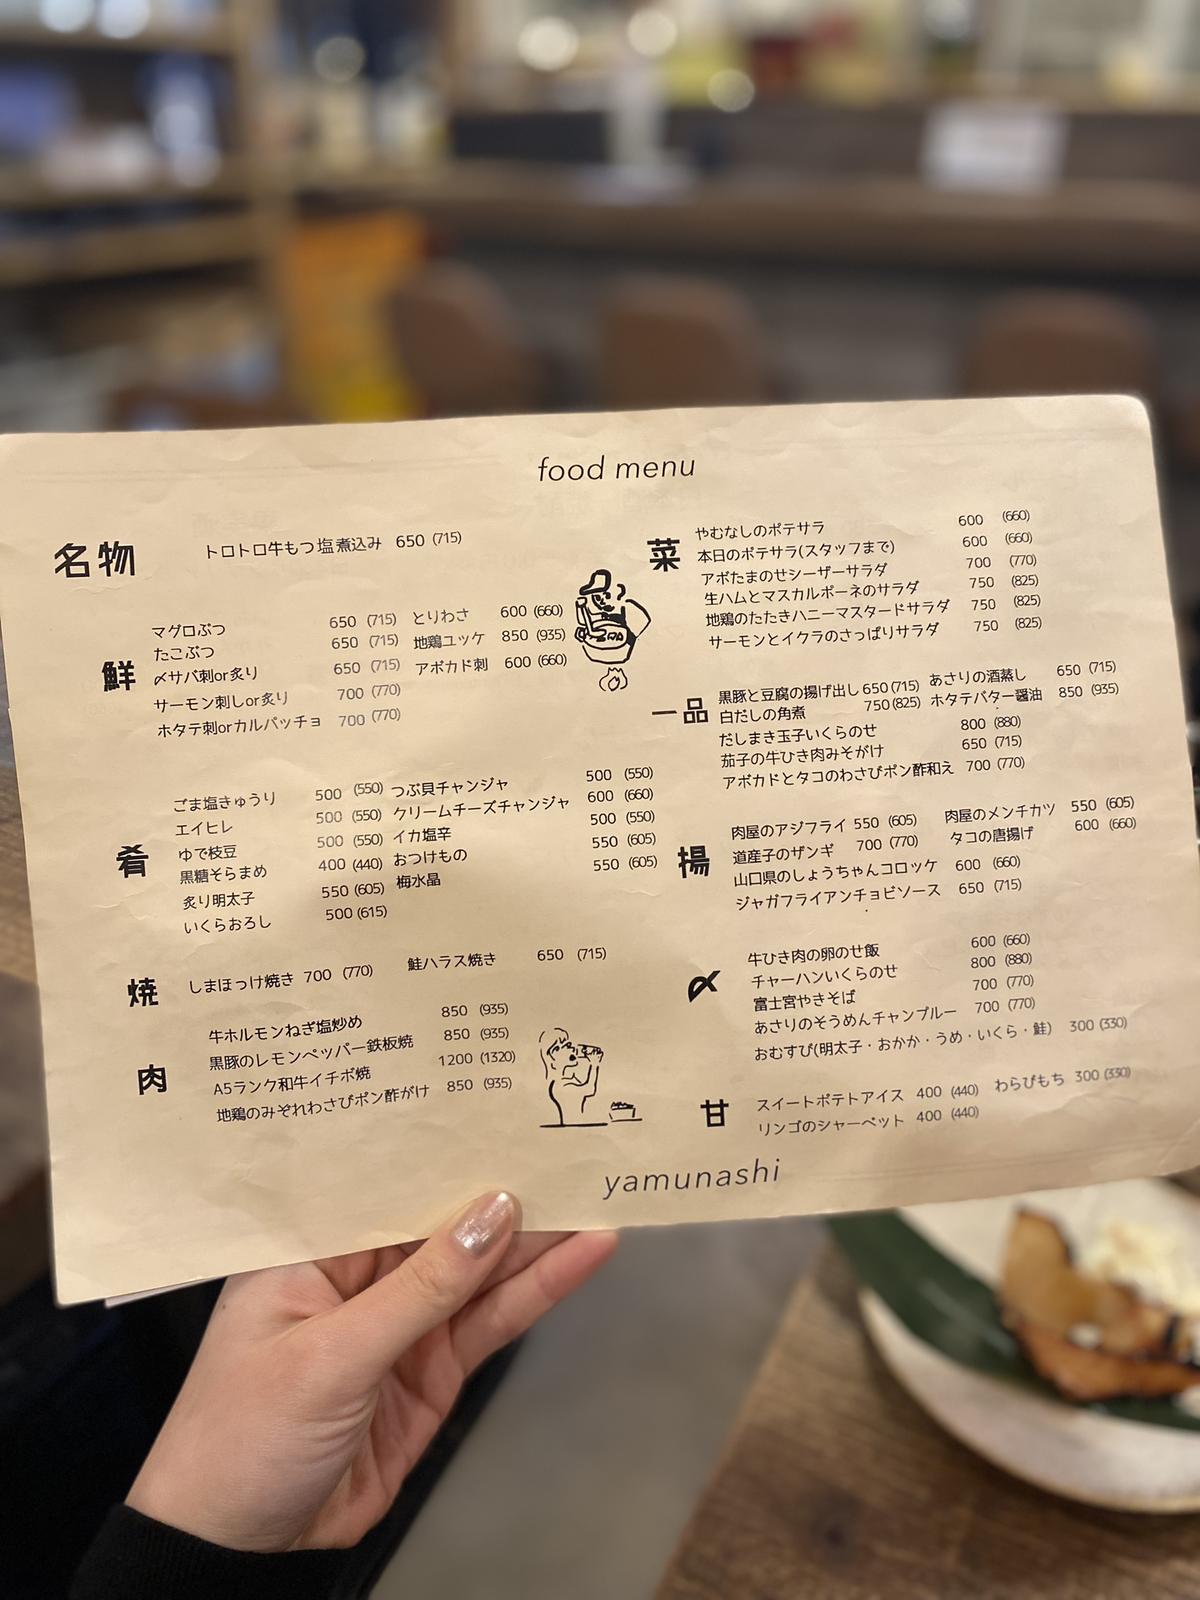 話題 渋谷のインスタ映えするオシャレ居酒屋 尾台彩香 おだいさやか が投稿したフォトブック Lemon8